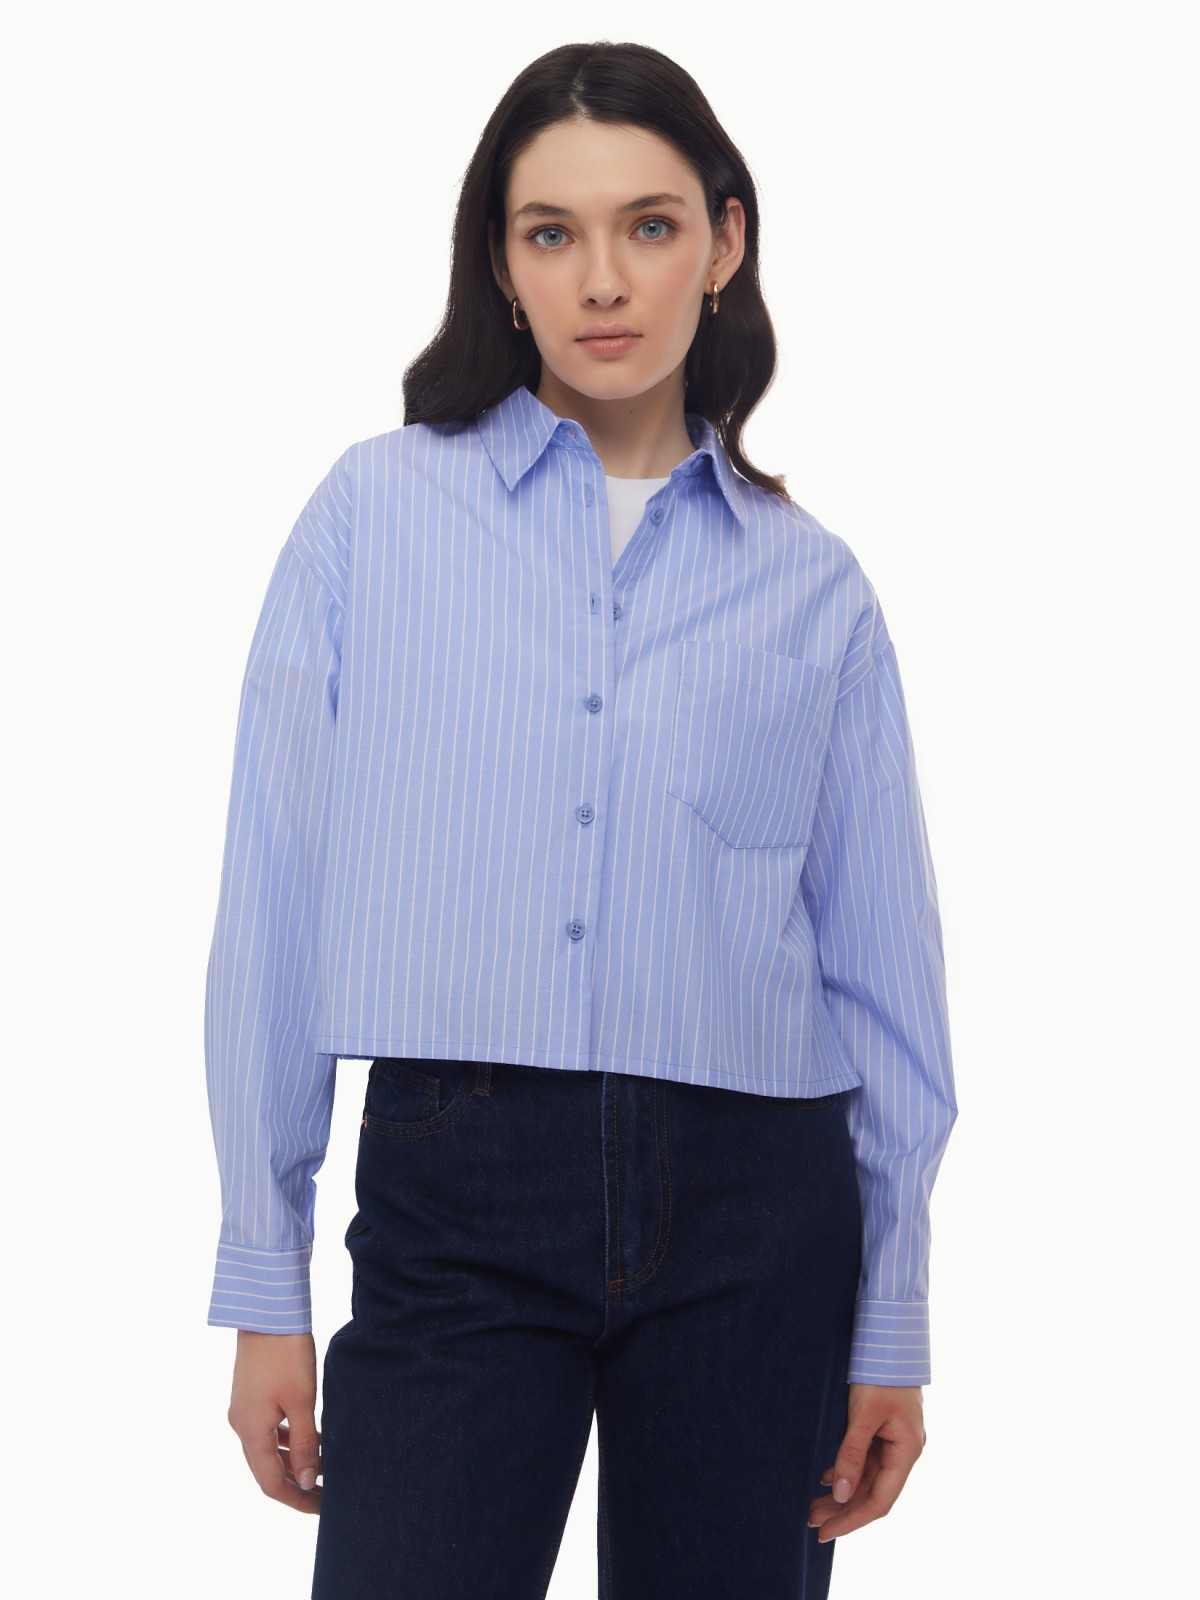 Рубашка укороченного силуэта с узором в полоску zolla светло-голубого цвета